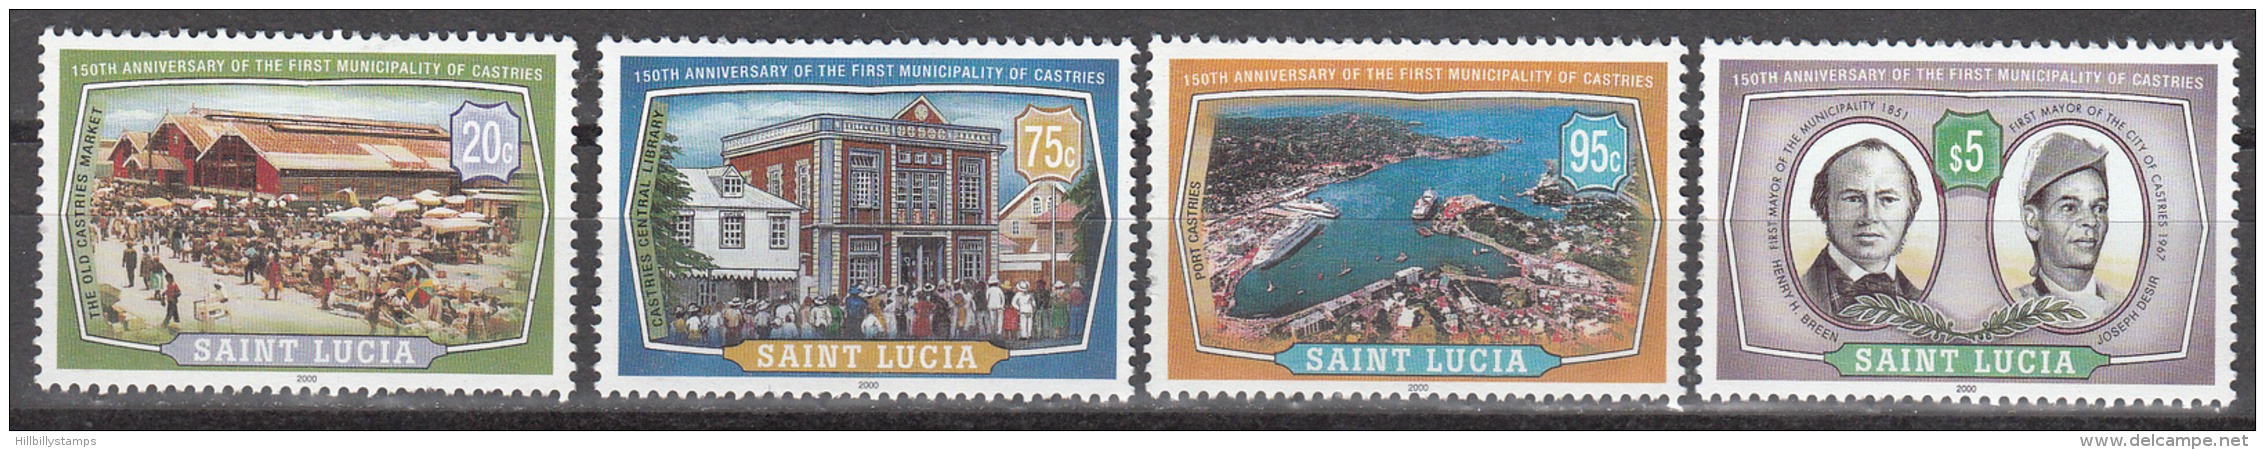 St Lucia    Scott No.  1121-24    Mnh   Year  2000 - Ste Lucie (...-1978)